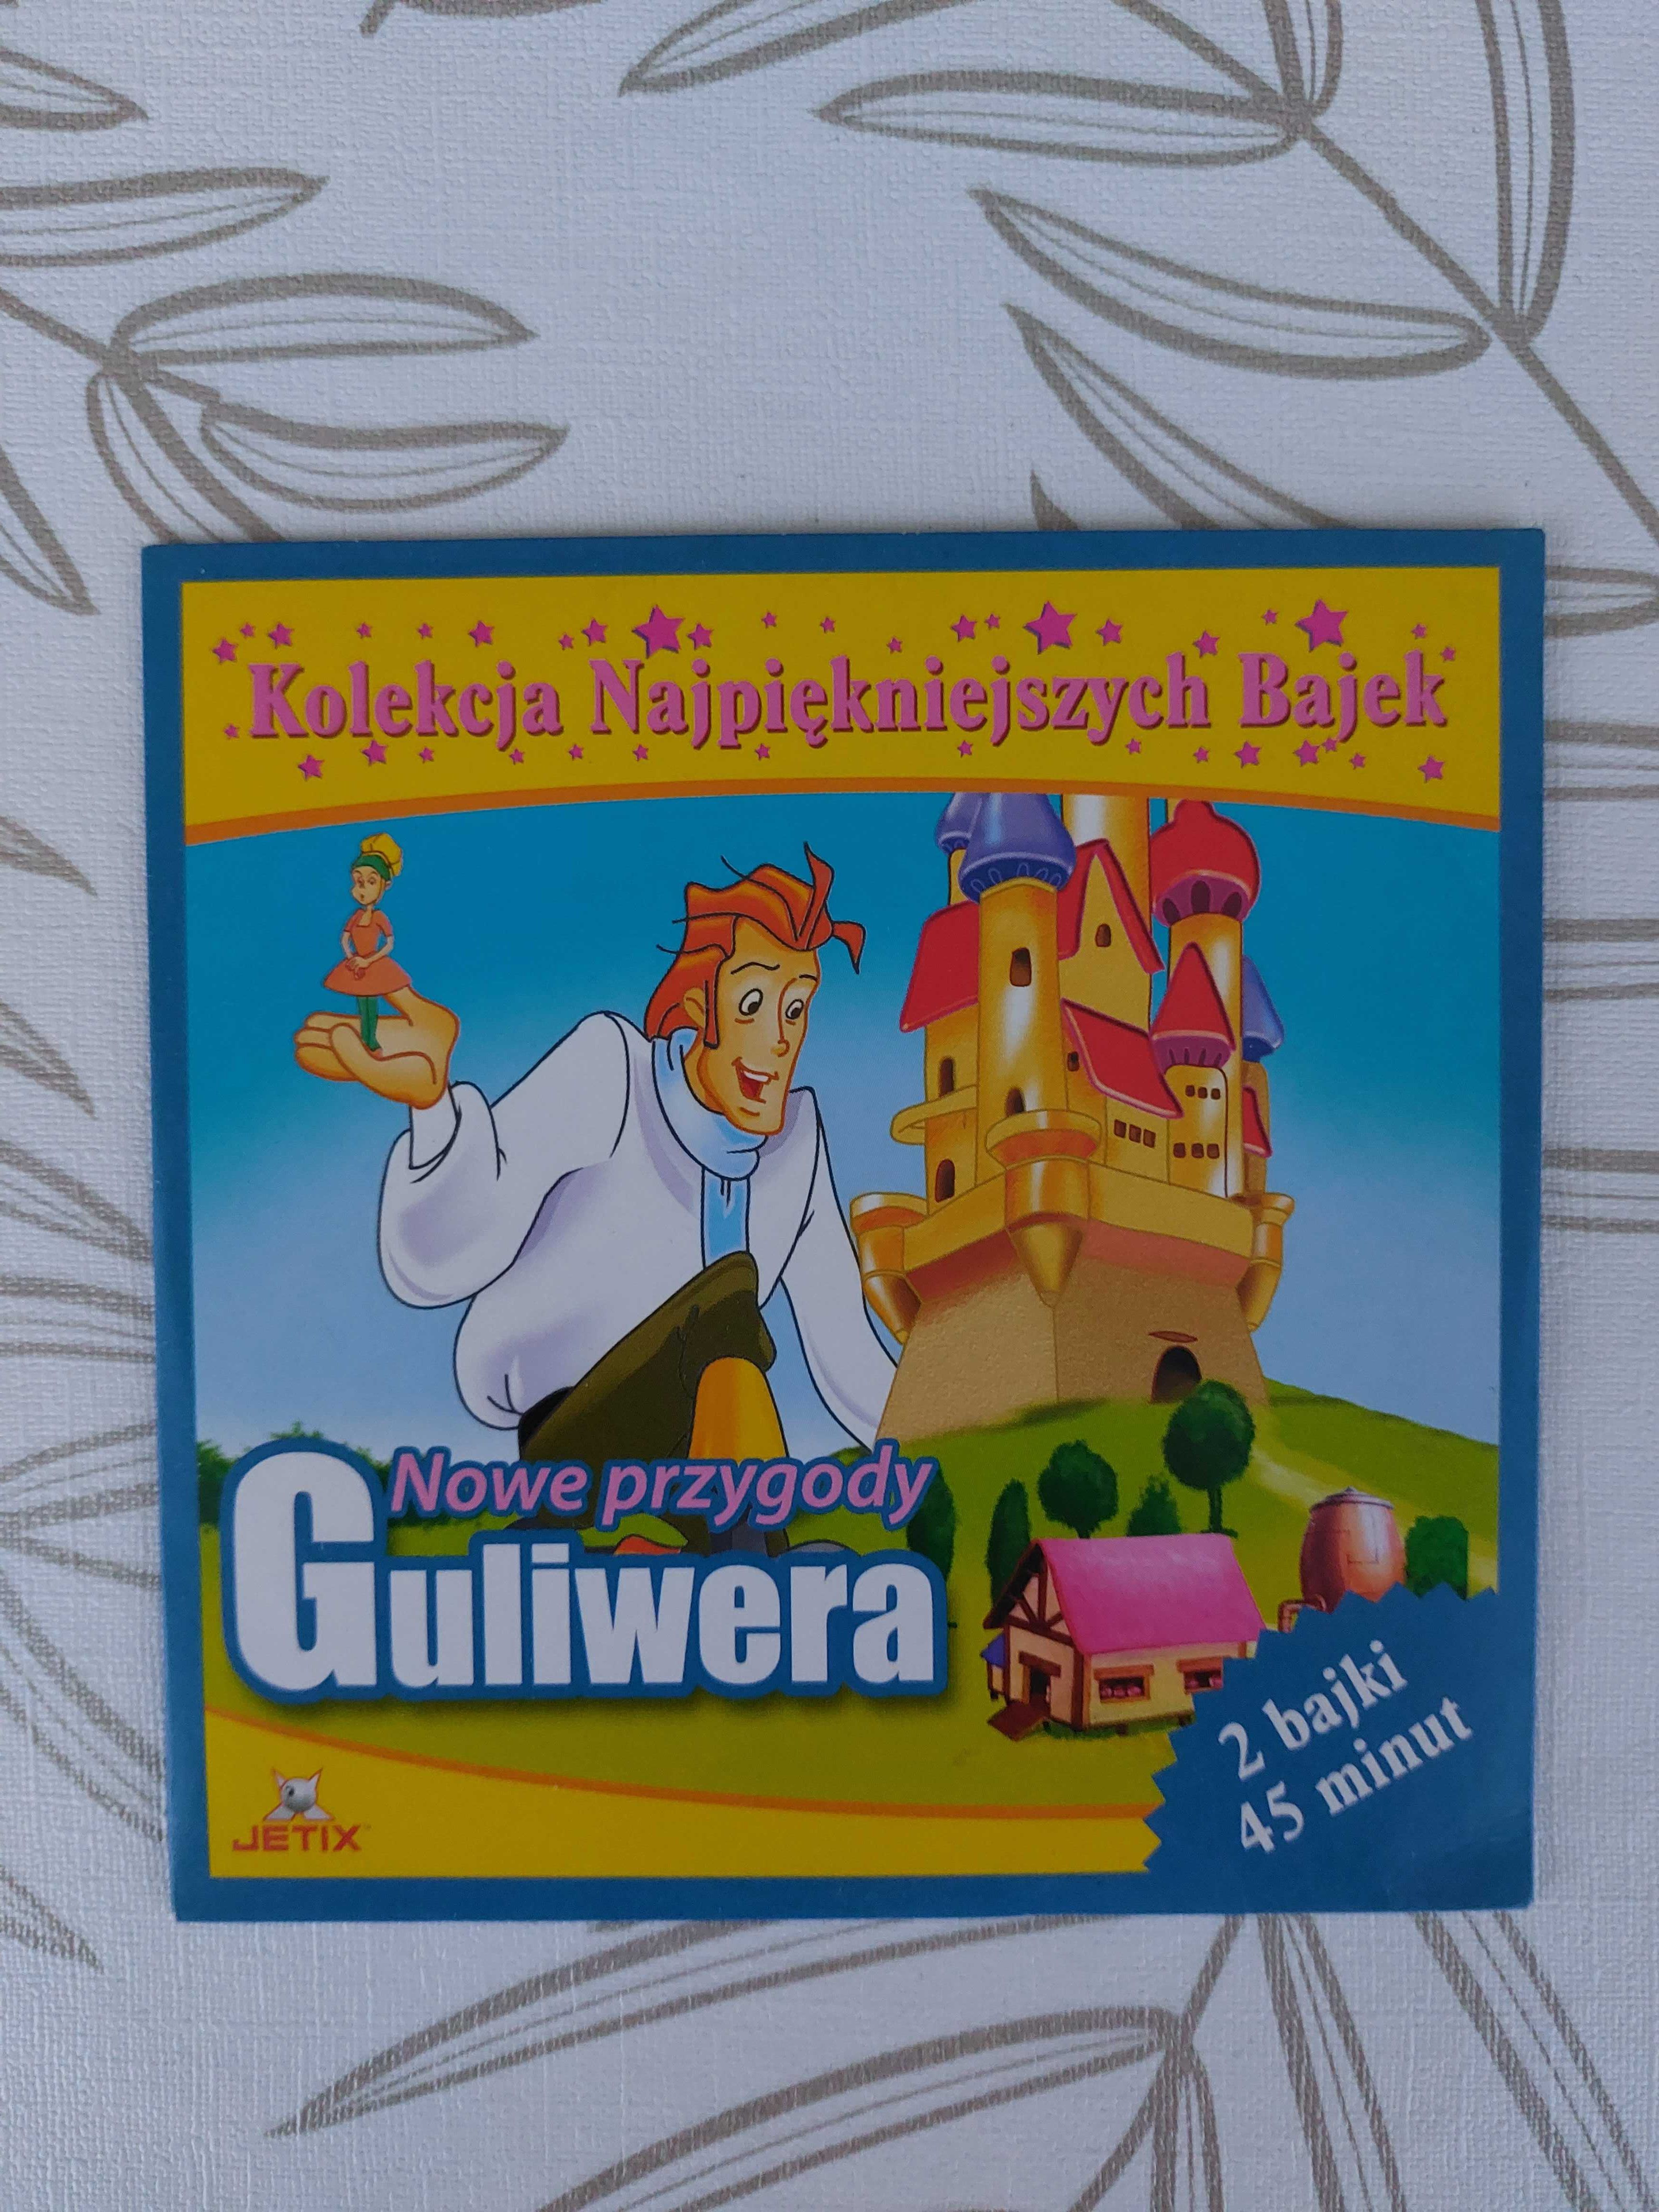 Nowe przygody Guliwera - 2 bajki na dvd